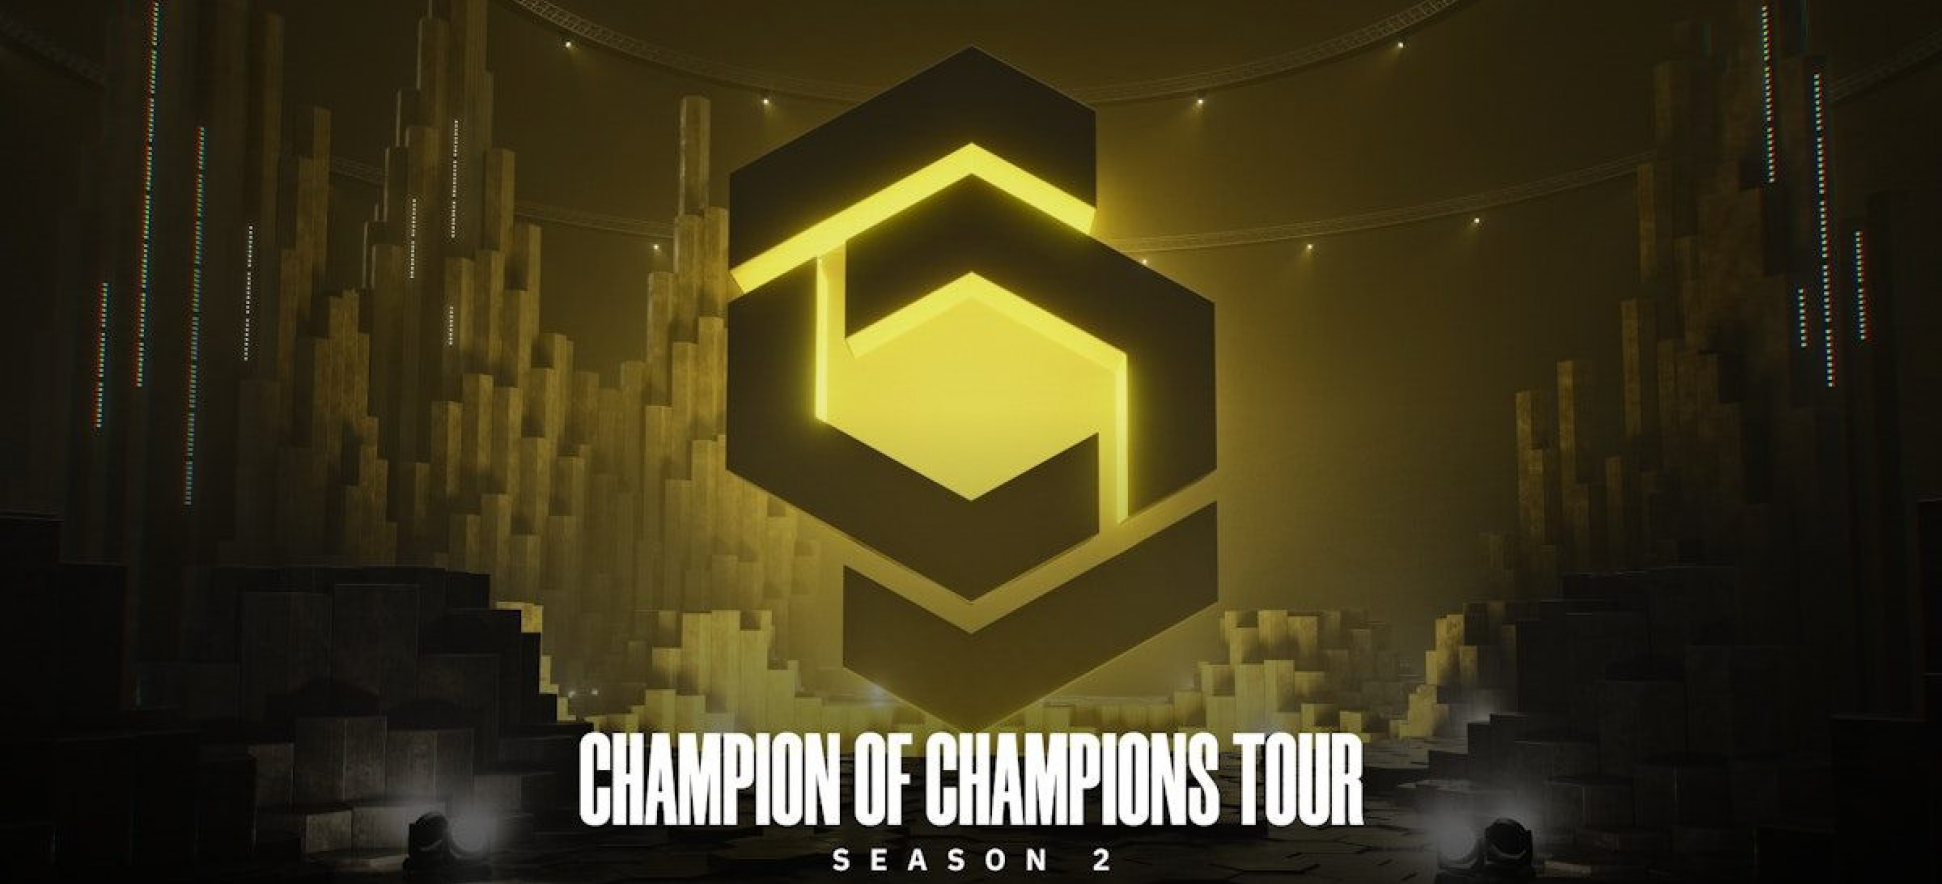 Второй сезон турнира Champion of Champions Tour уже скоро!